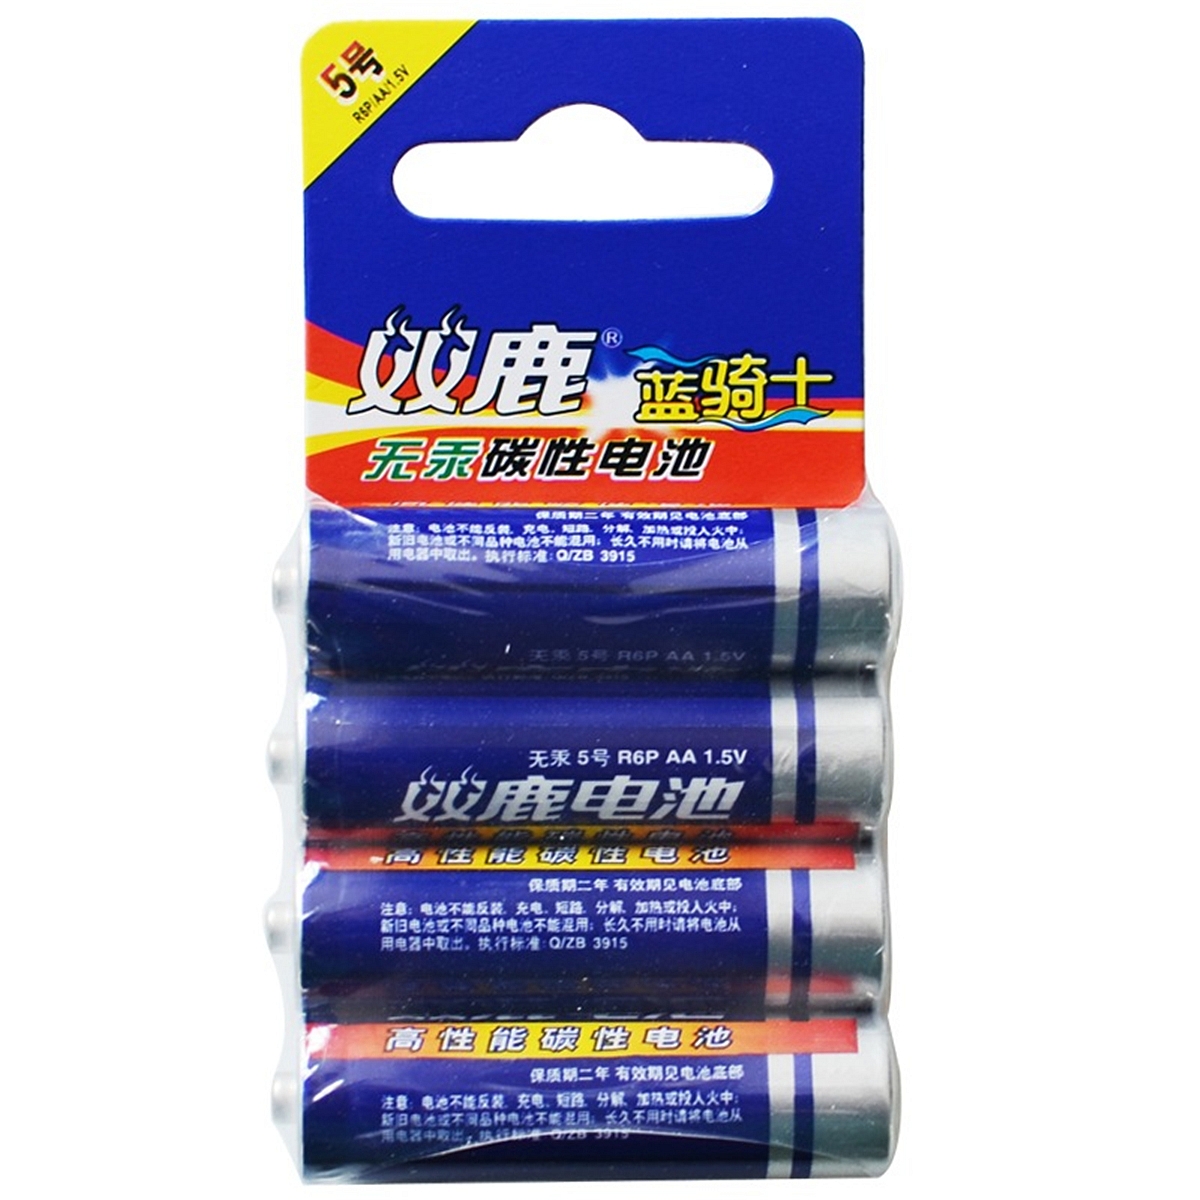 双鹿5#Battery干电池(碳性)(节)